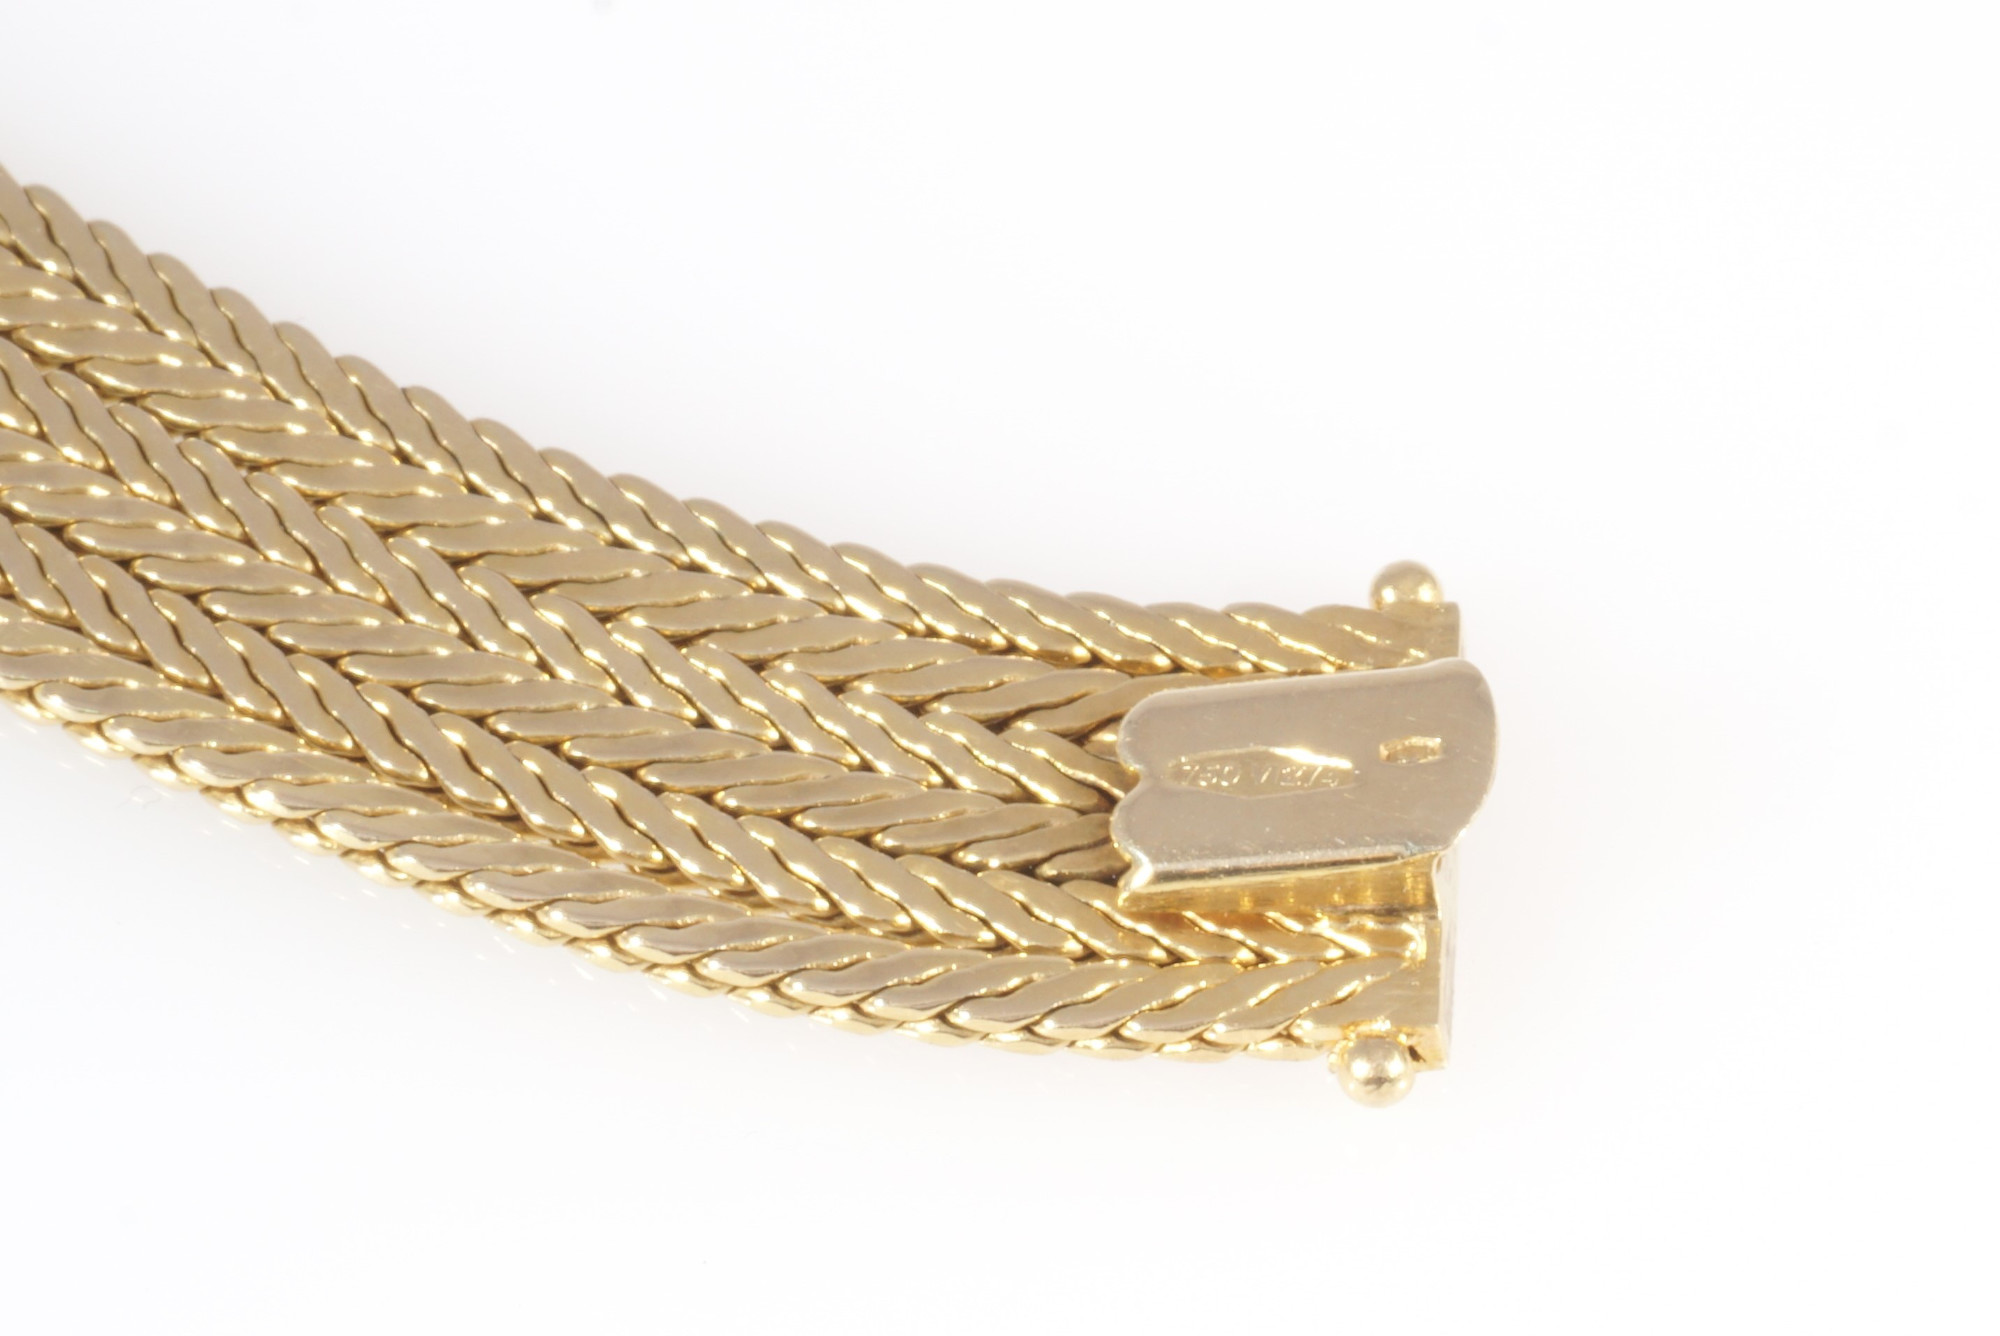 750 six-rowed gold bracelet, 18K Gold sechsreihige Armband, - Image 5 of 5